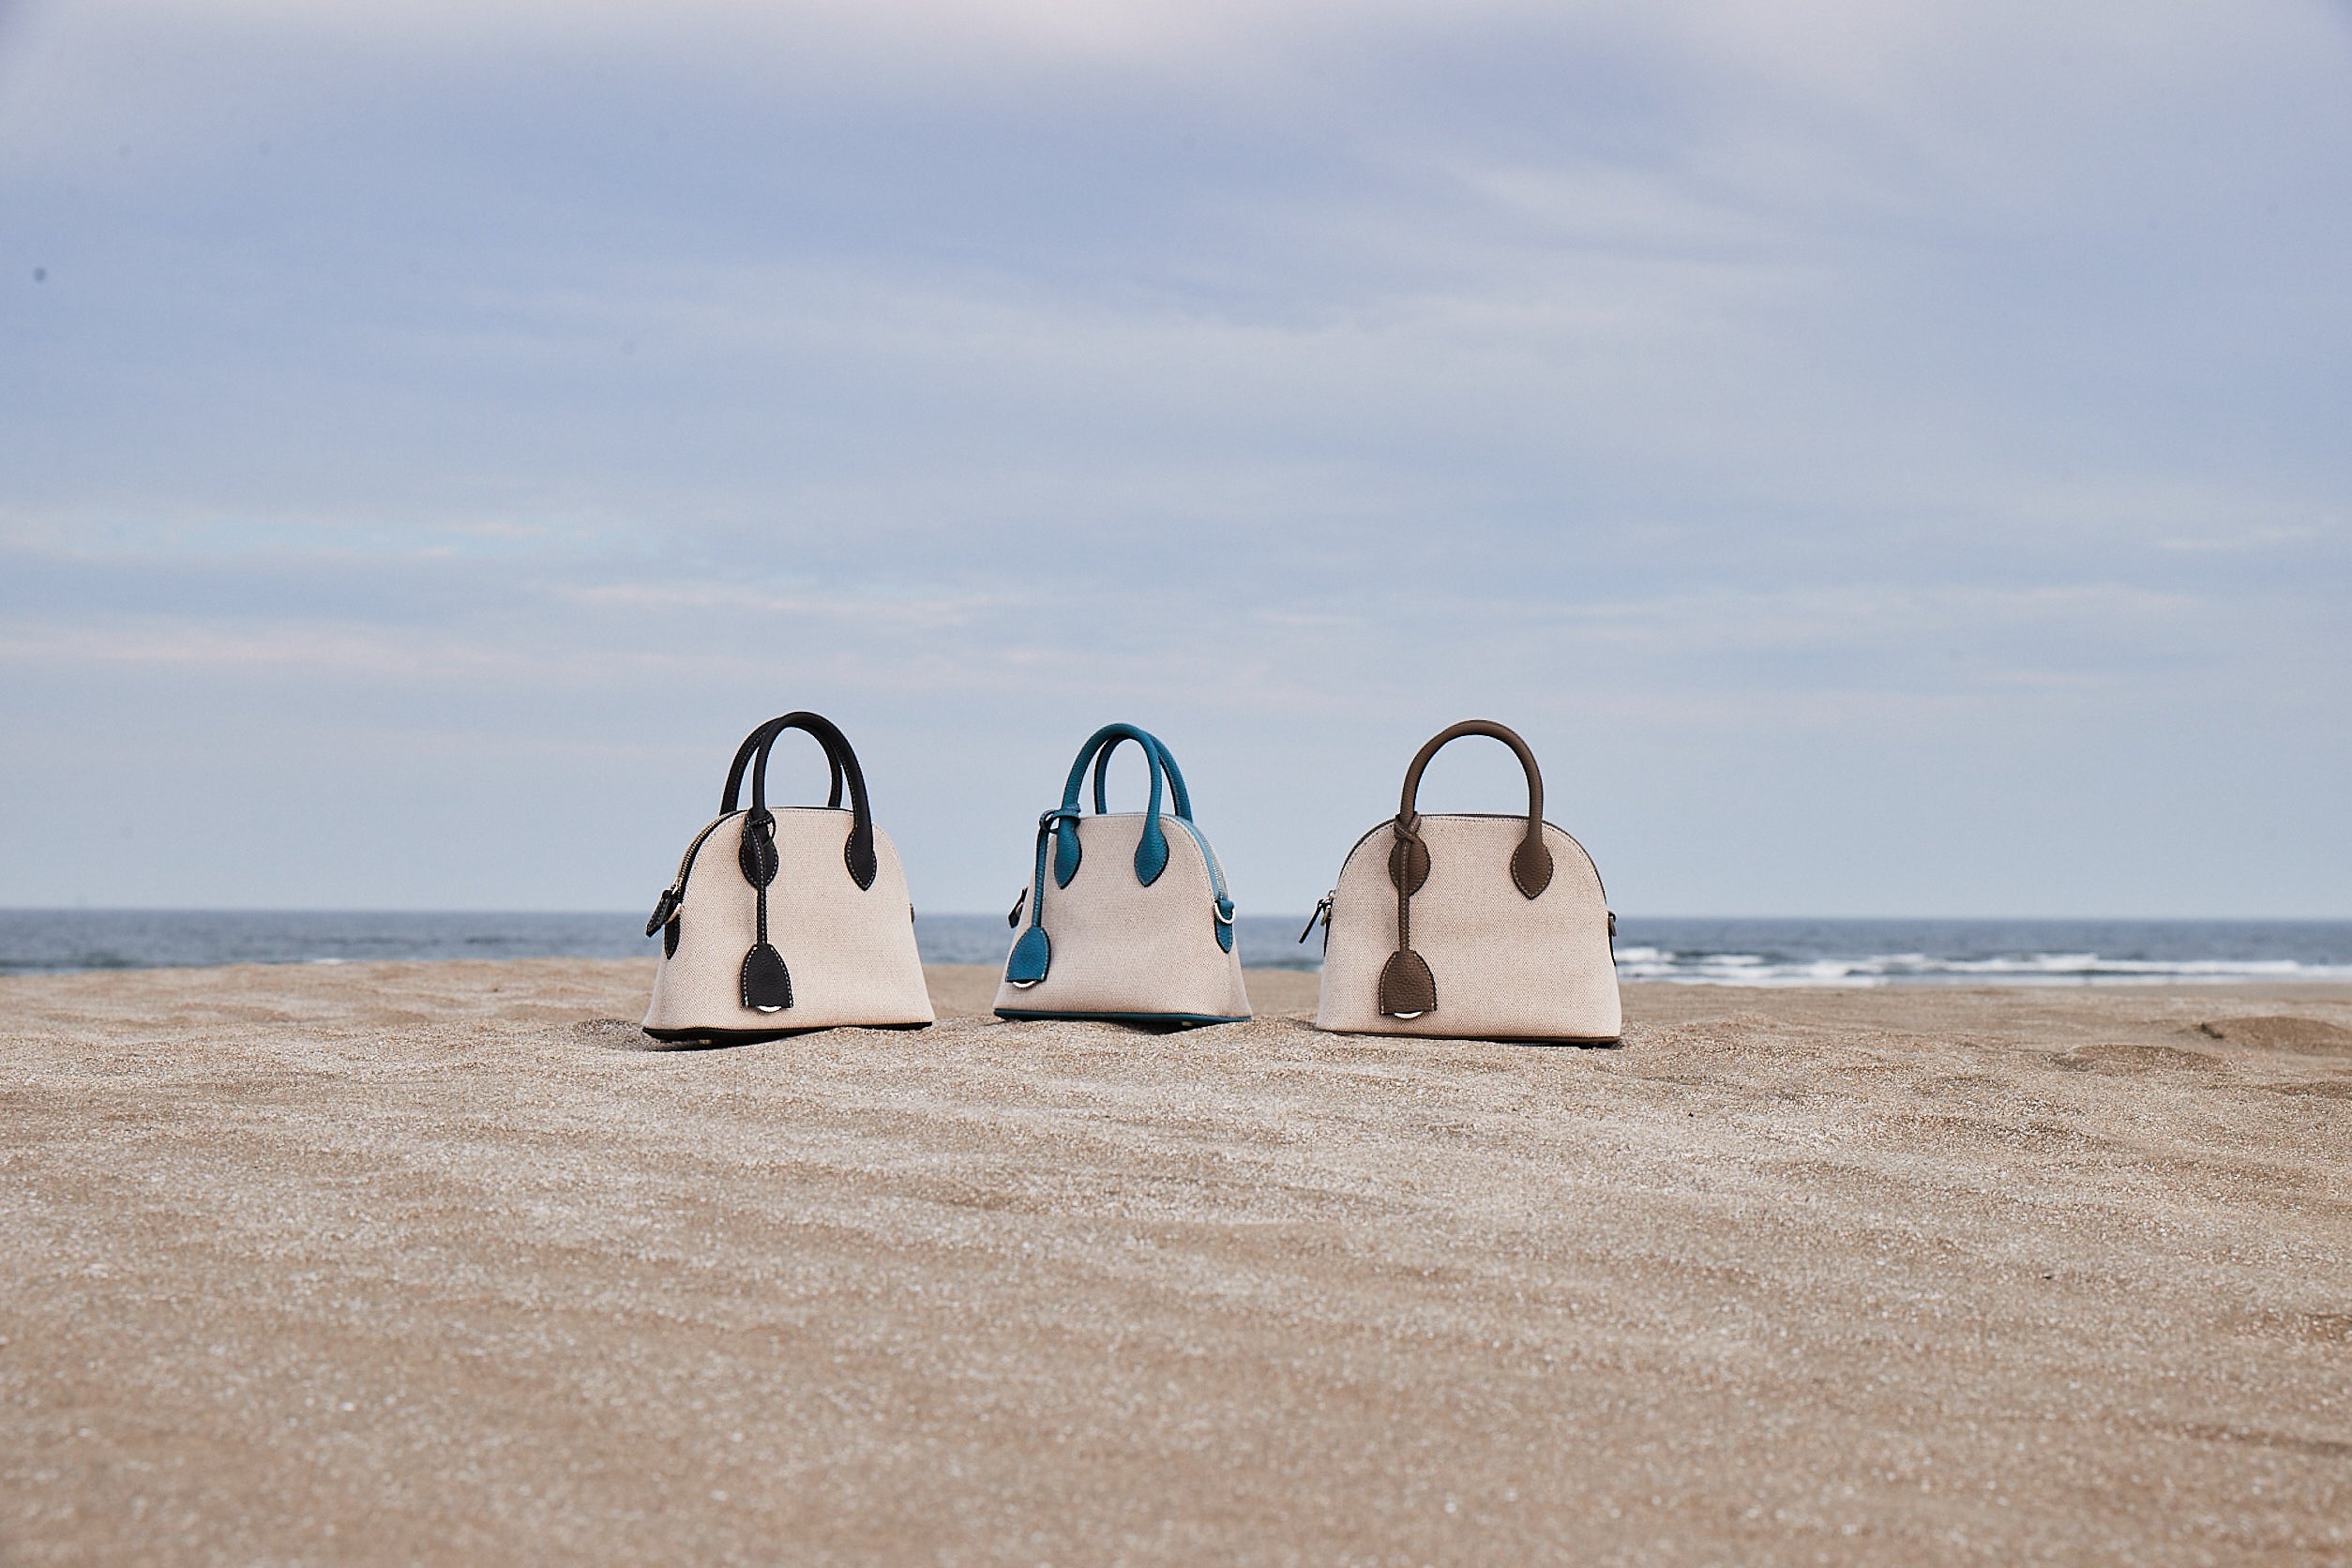 Letní plátěné tašky Mini Emma od BONAVENTURA představené na pláži.